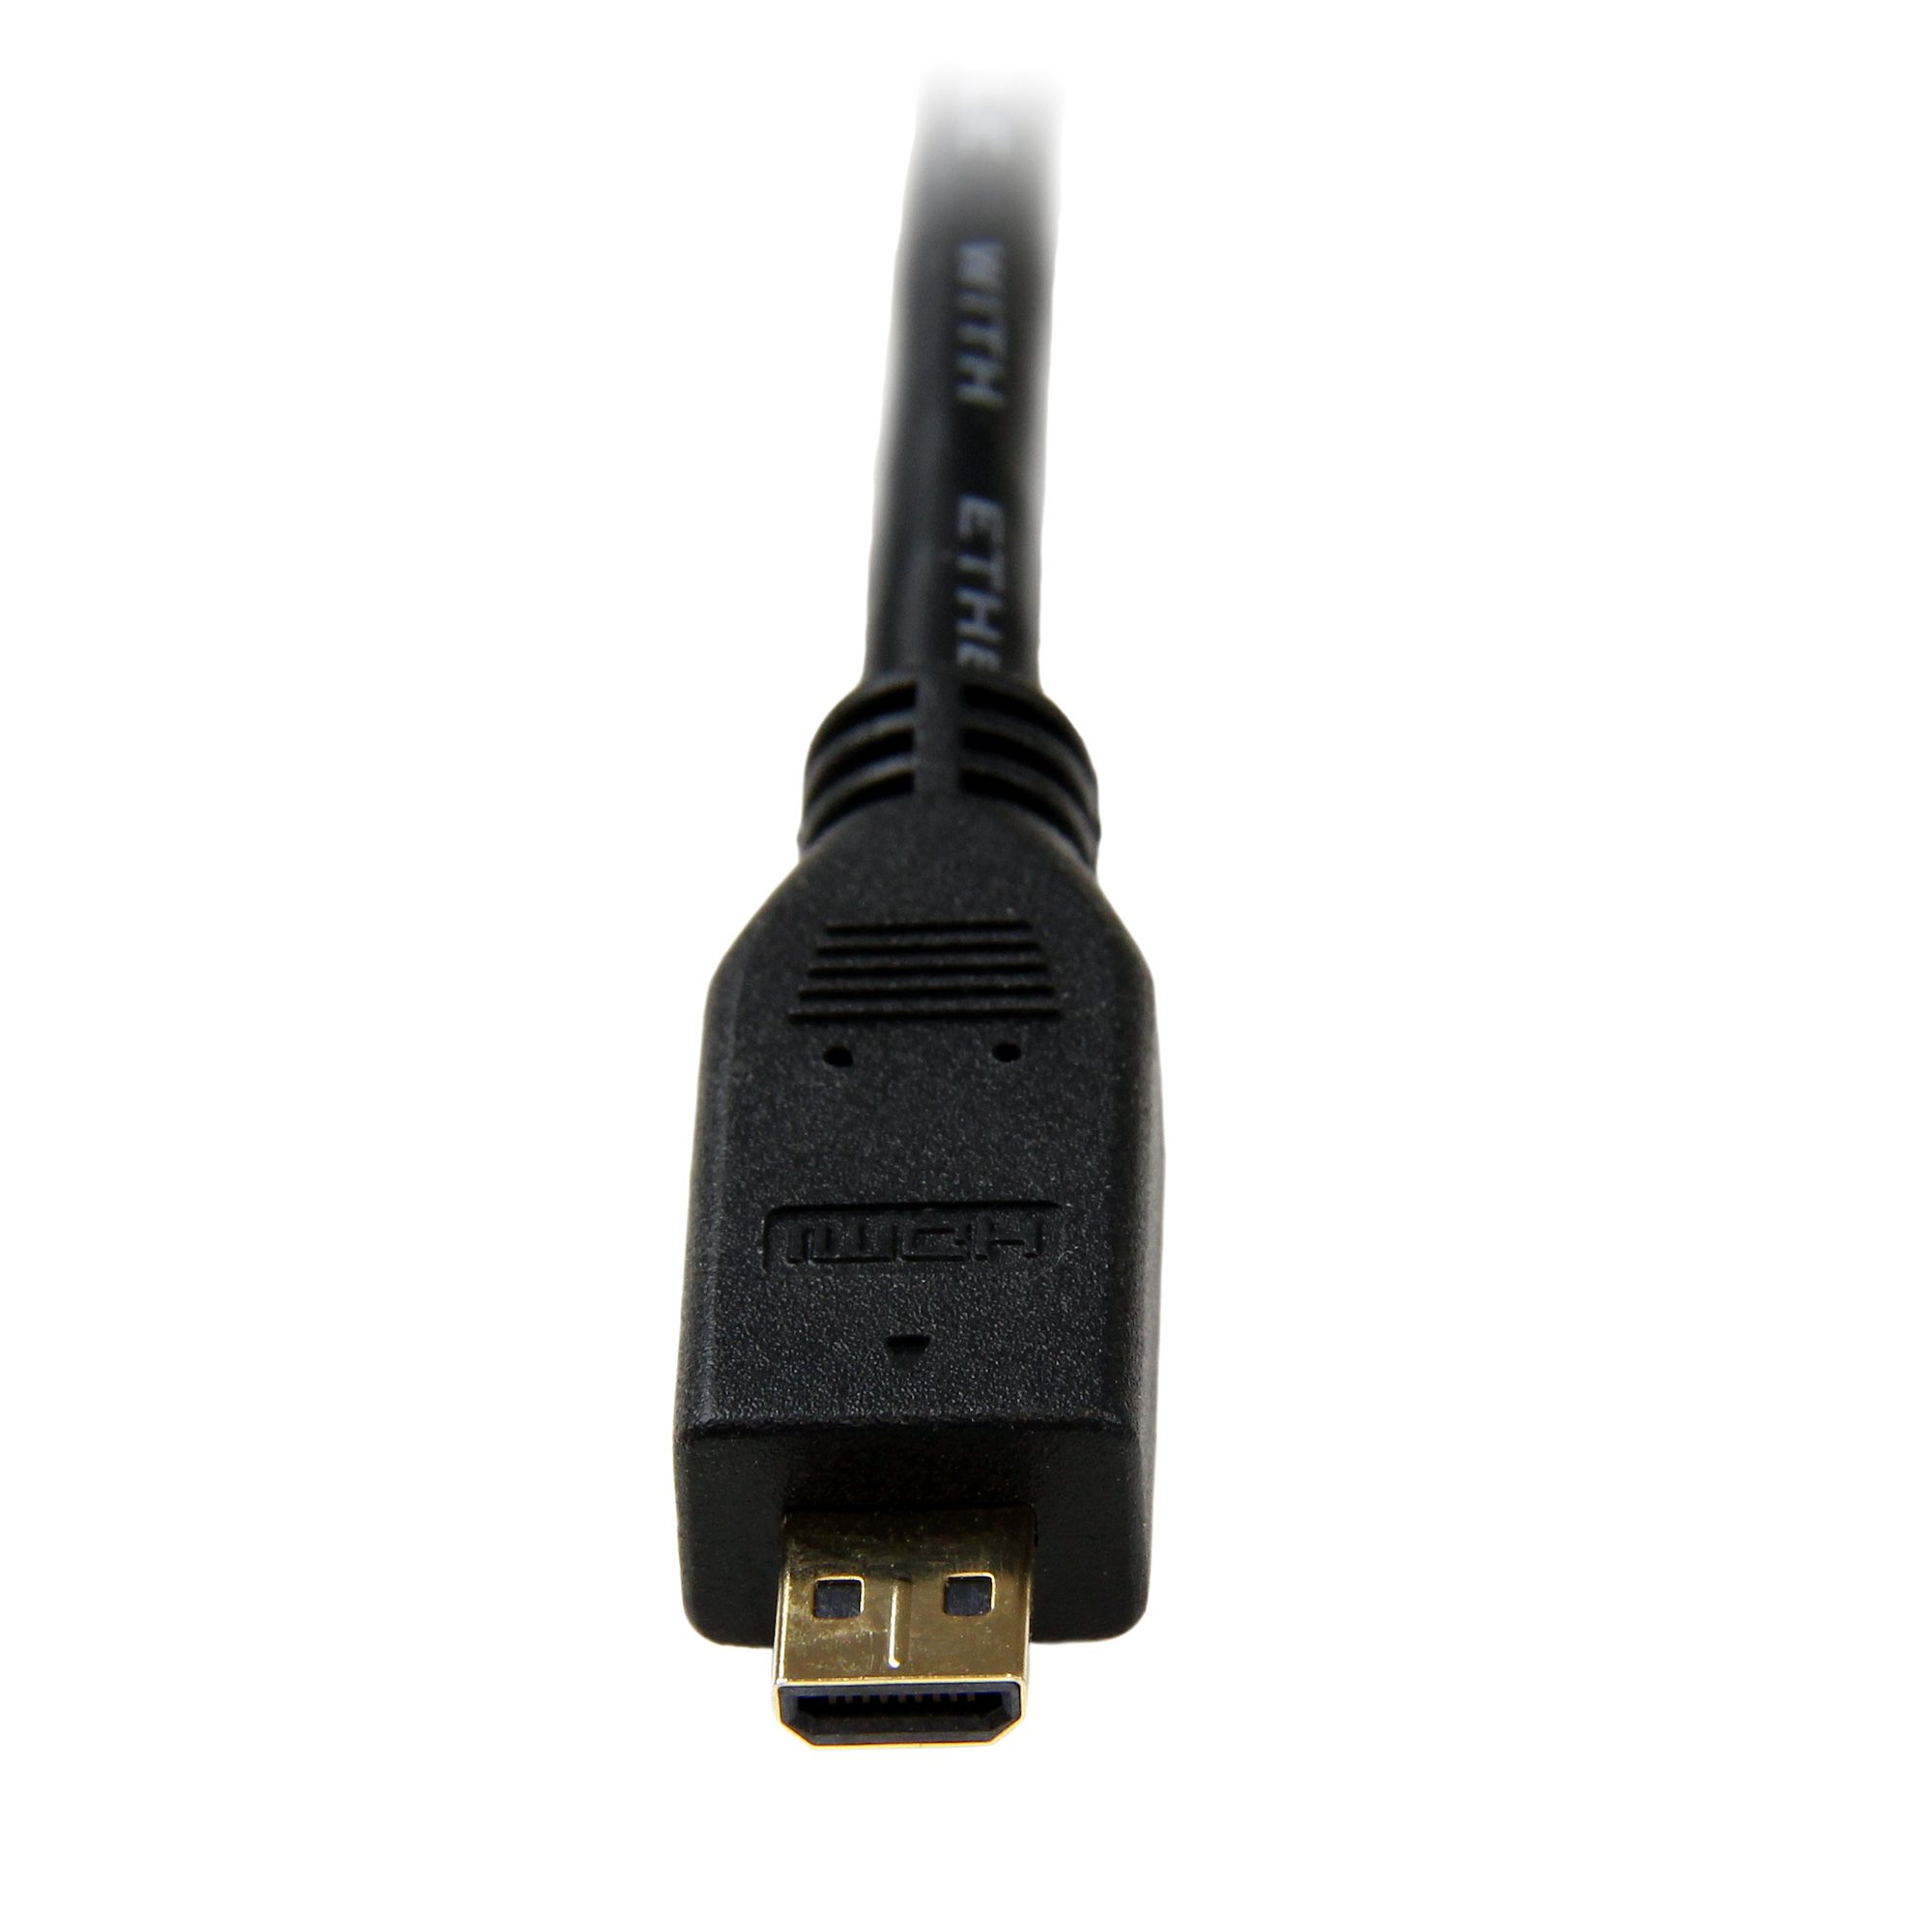 HDMI to micro HDMI cable – Agiler USA